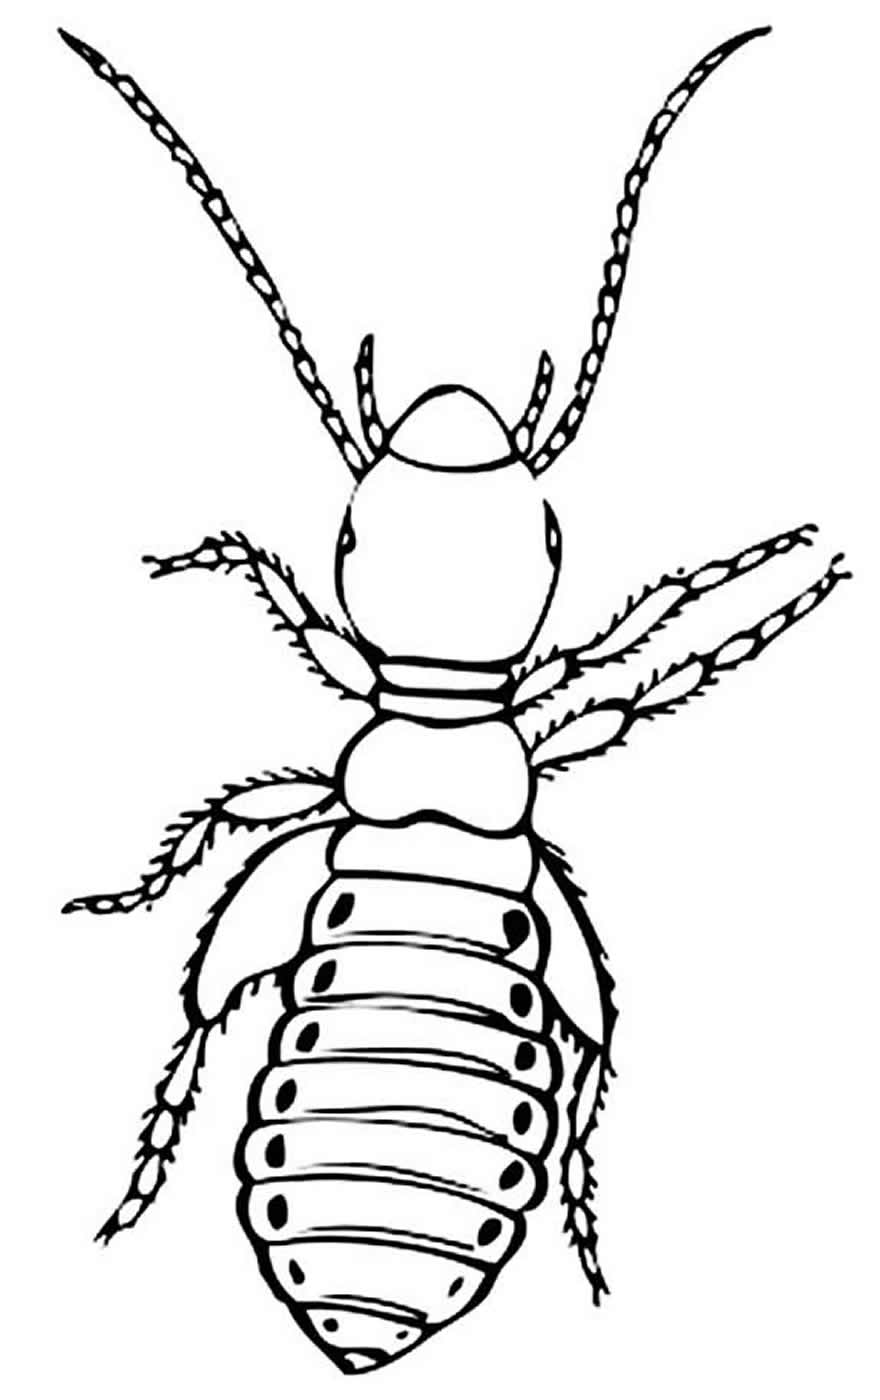 Desenho de inseto para colorir